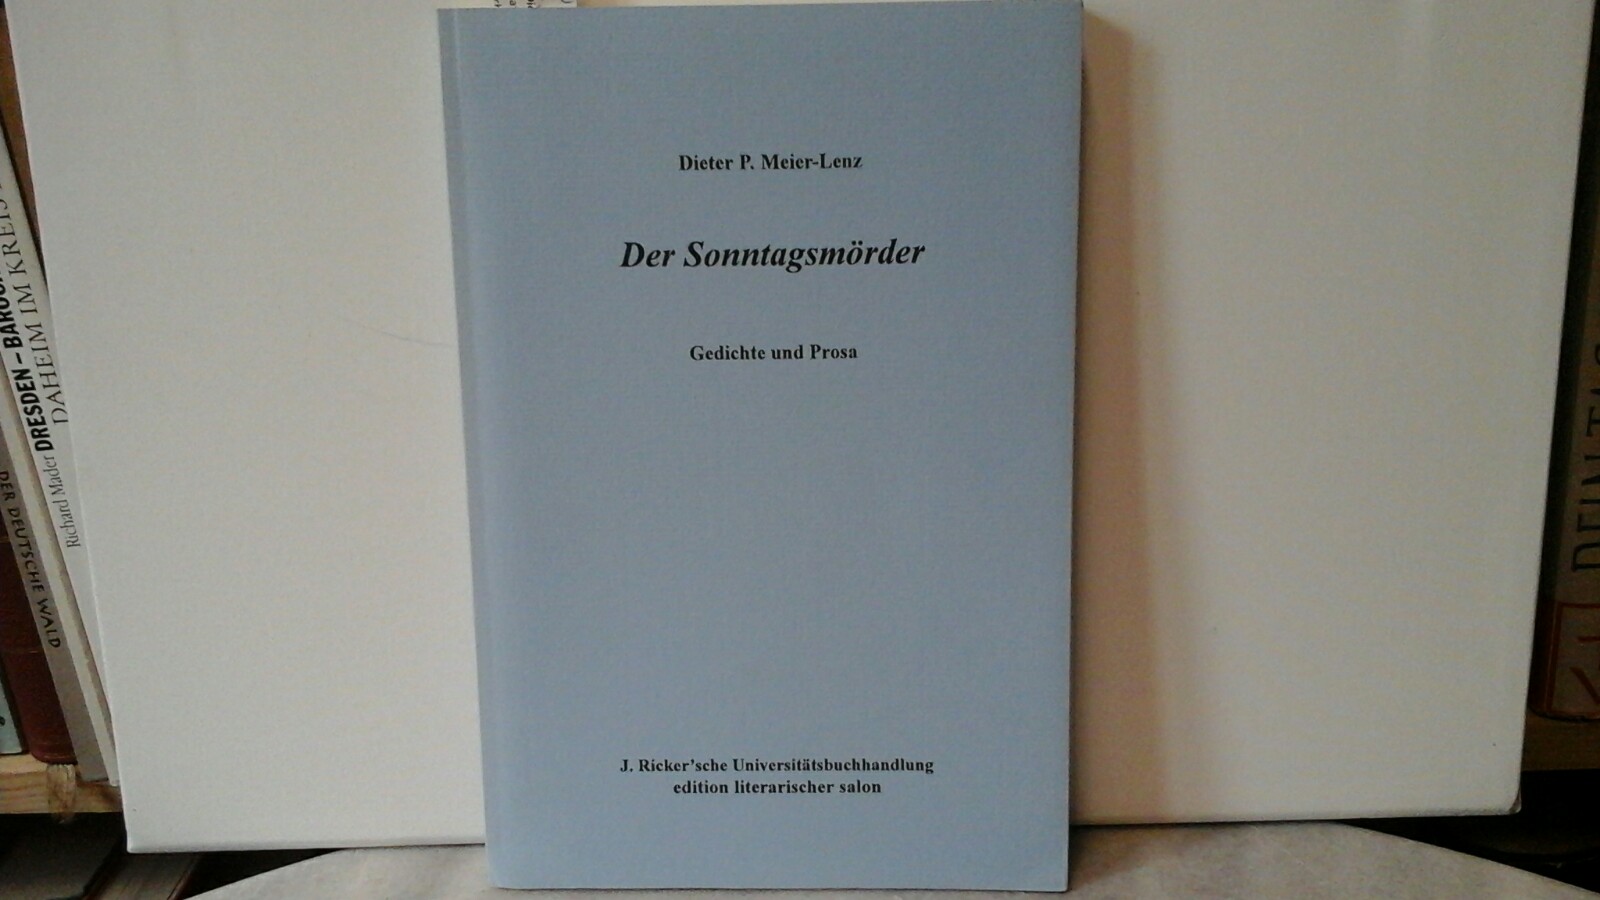 MEIER-LENZ, DIETER P.: Der Sonntagsmrder. Gedichte und Prosa. Erste /1./ Ausgabe.